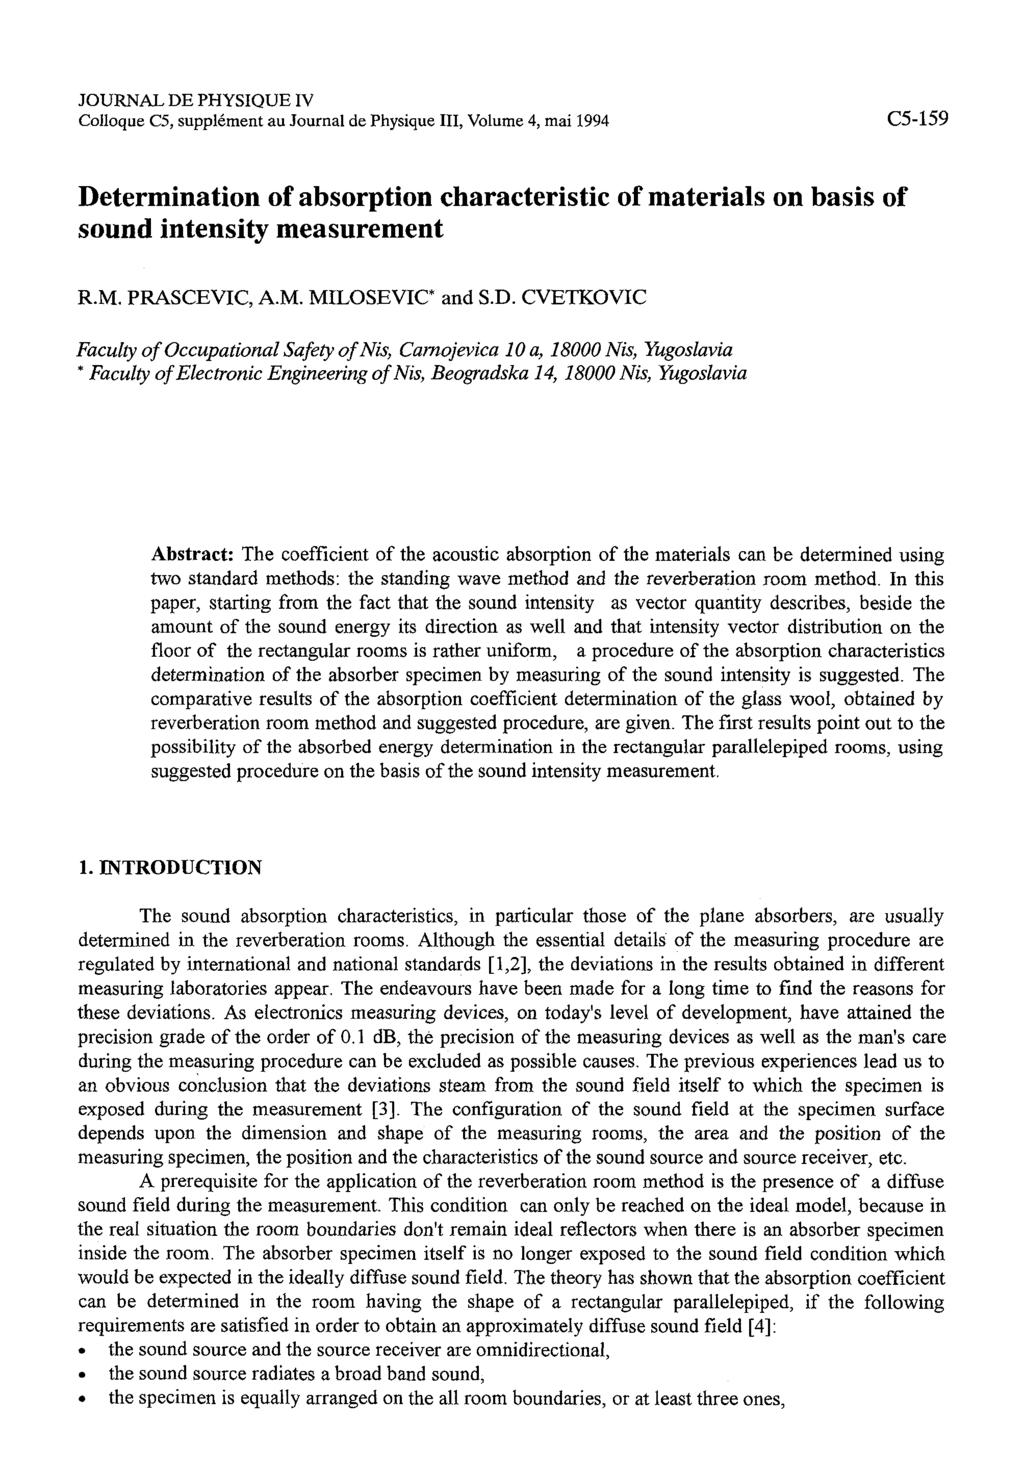 JOURNAL DE PHYSIQUE IV Colloque C5, suppl6ment au Journal de Physique 111, Volume 4, mai 1994 Determination of absorption characteristic of materials on basis of sound intensity measurement R.M.